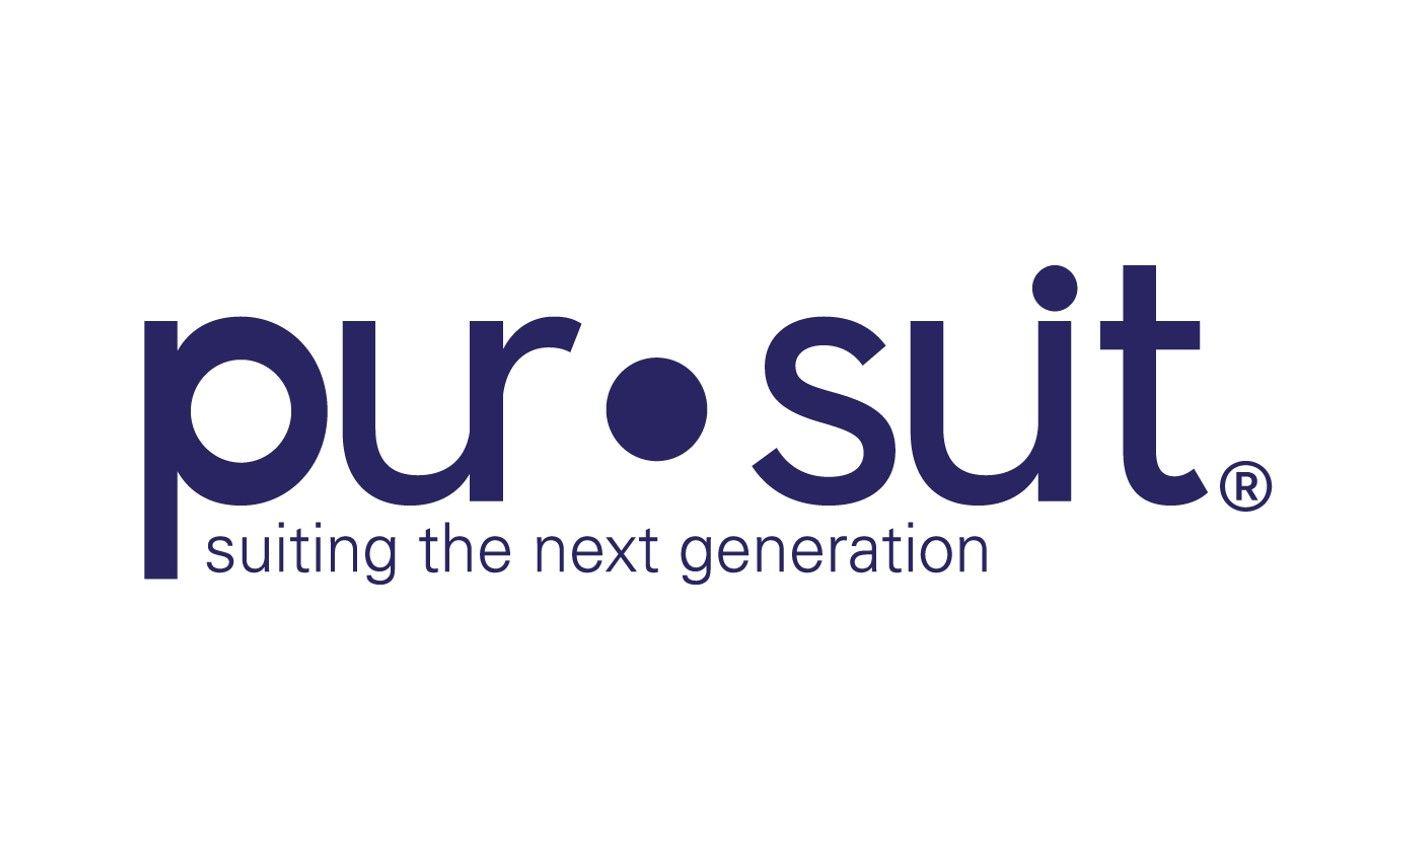 Pursuit Logo - pursuit logo. Short North, Columbus Ohio